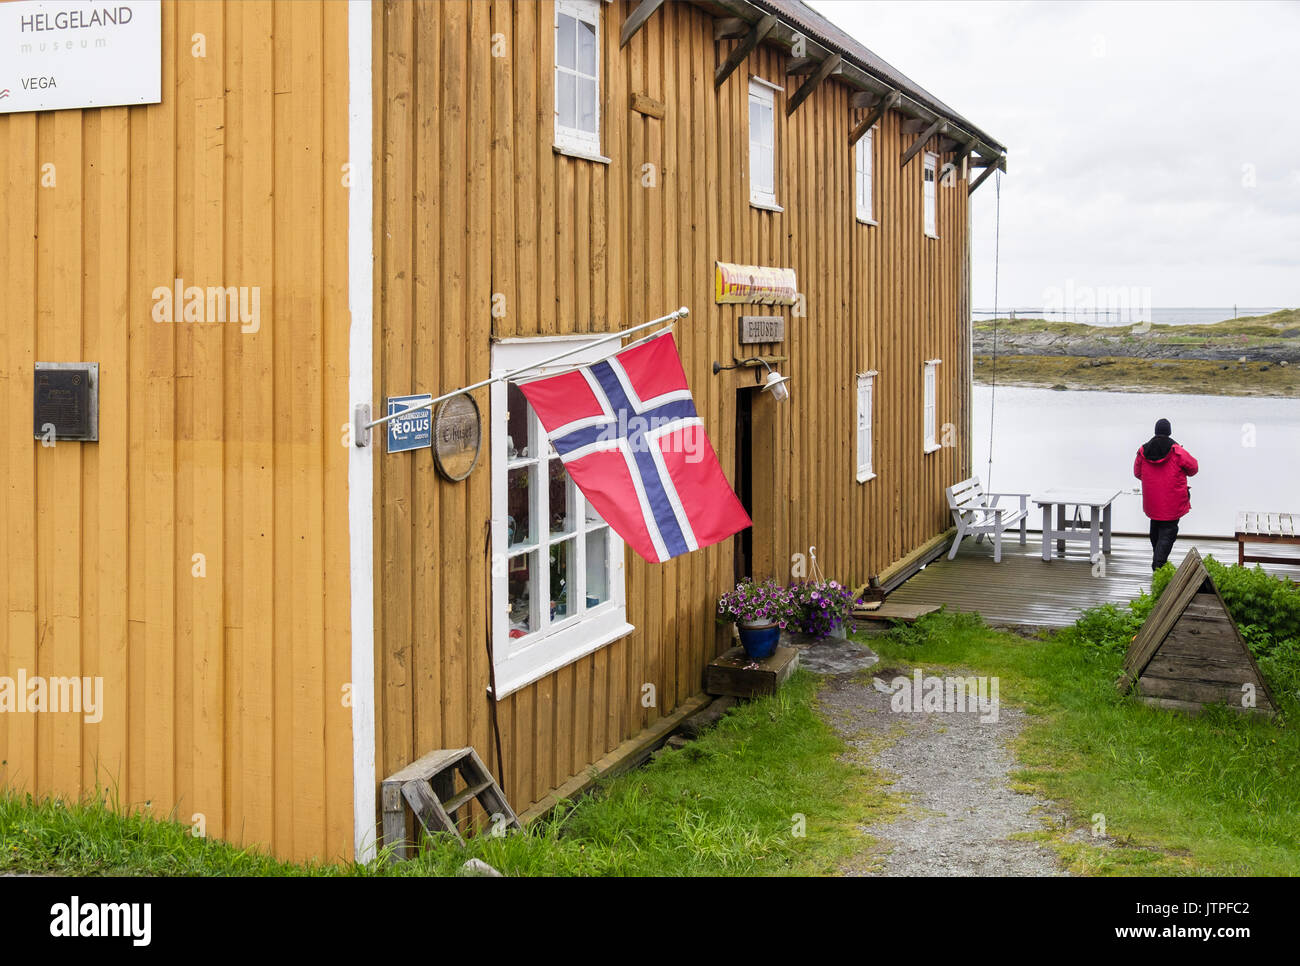 Helgeland Museum hat zeigt der Eider Ente unten Ernte in einem Holzhaus. Nes, Vega Insel, Nordland, Norwegen, Skandinavien Stockfoto